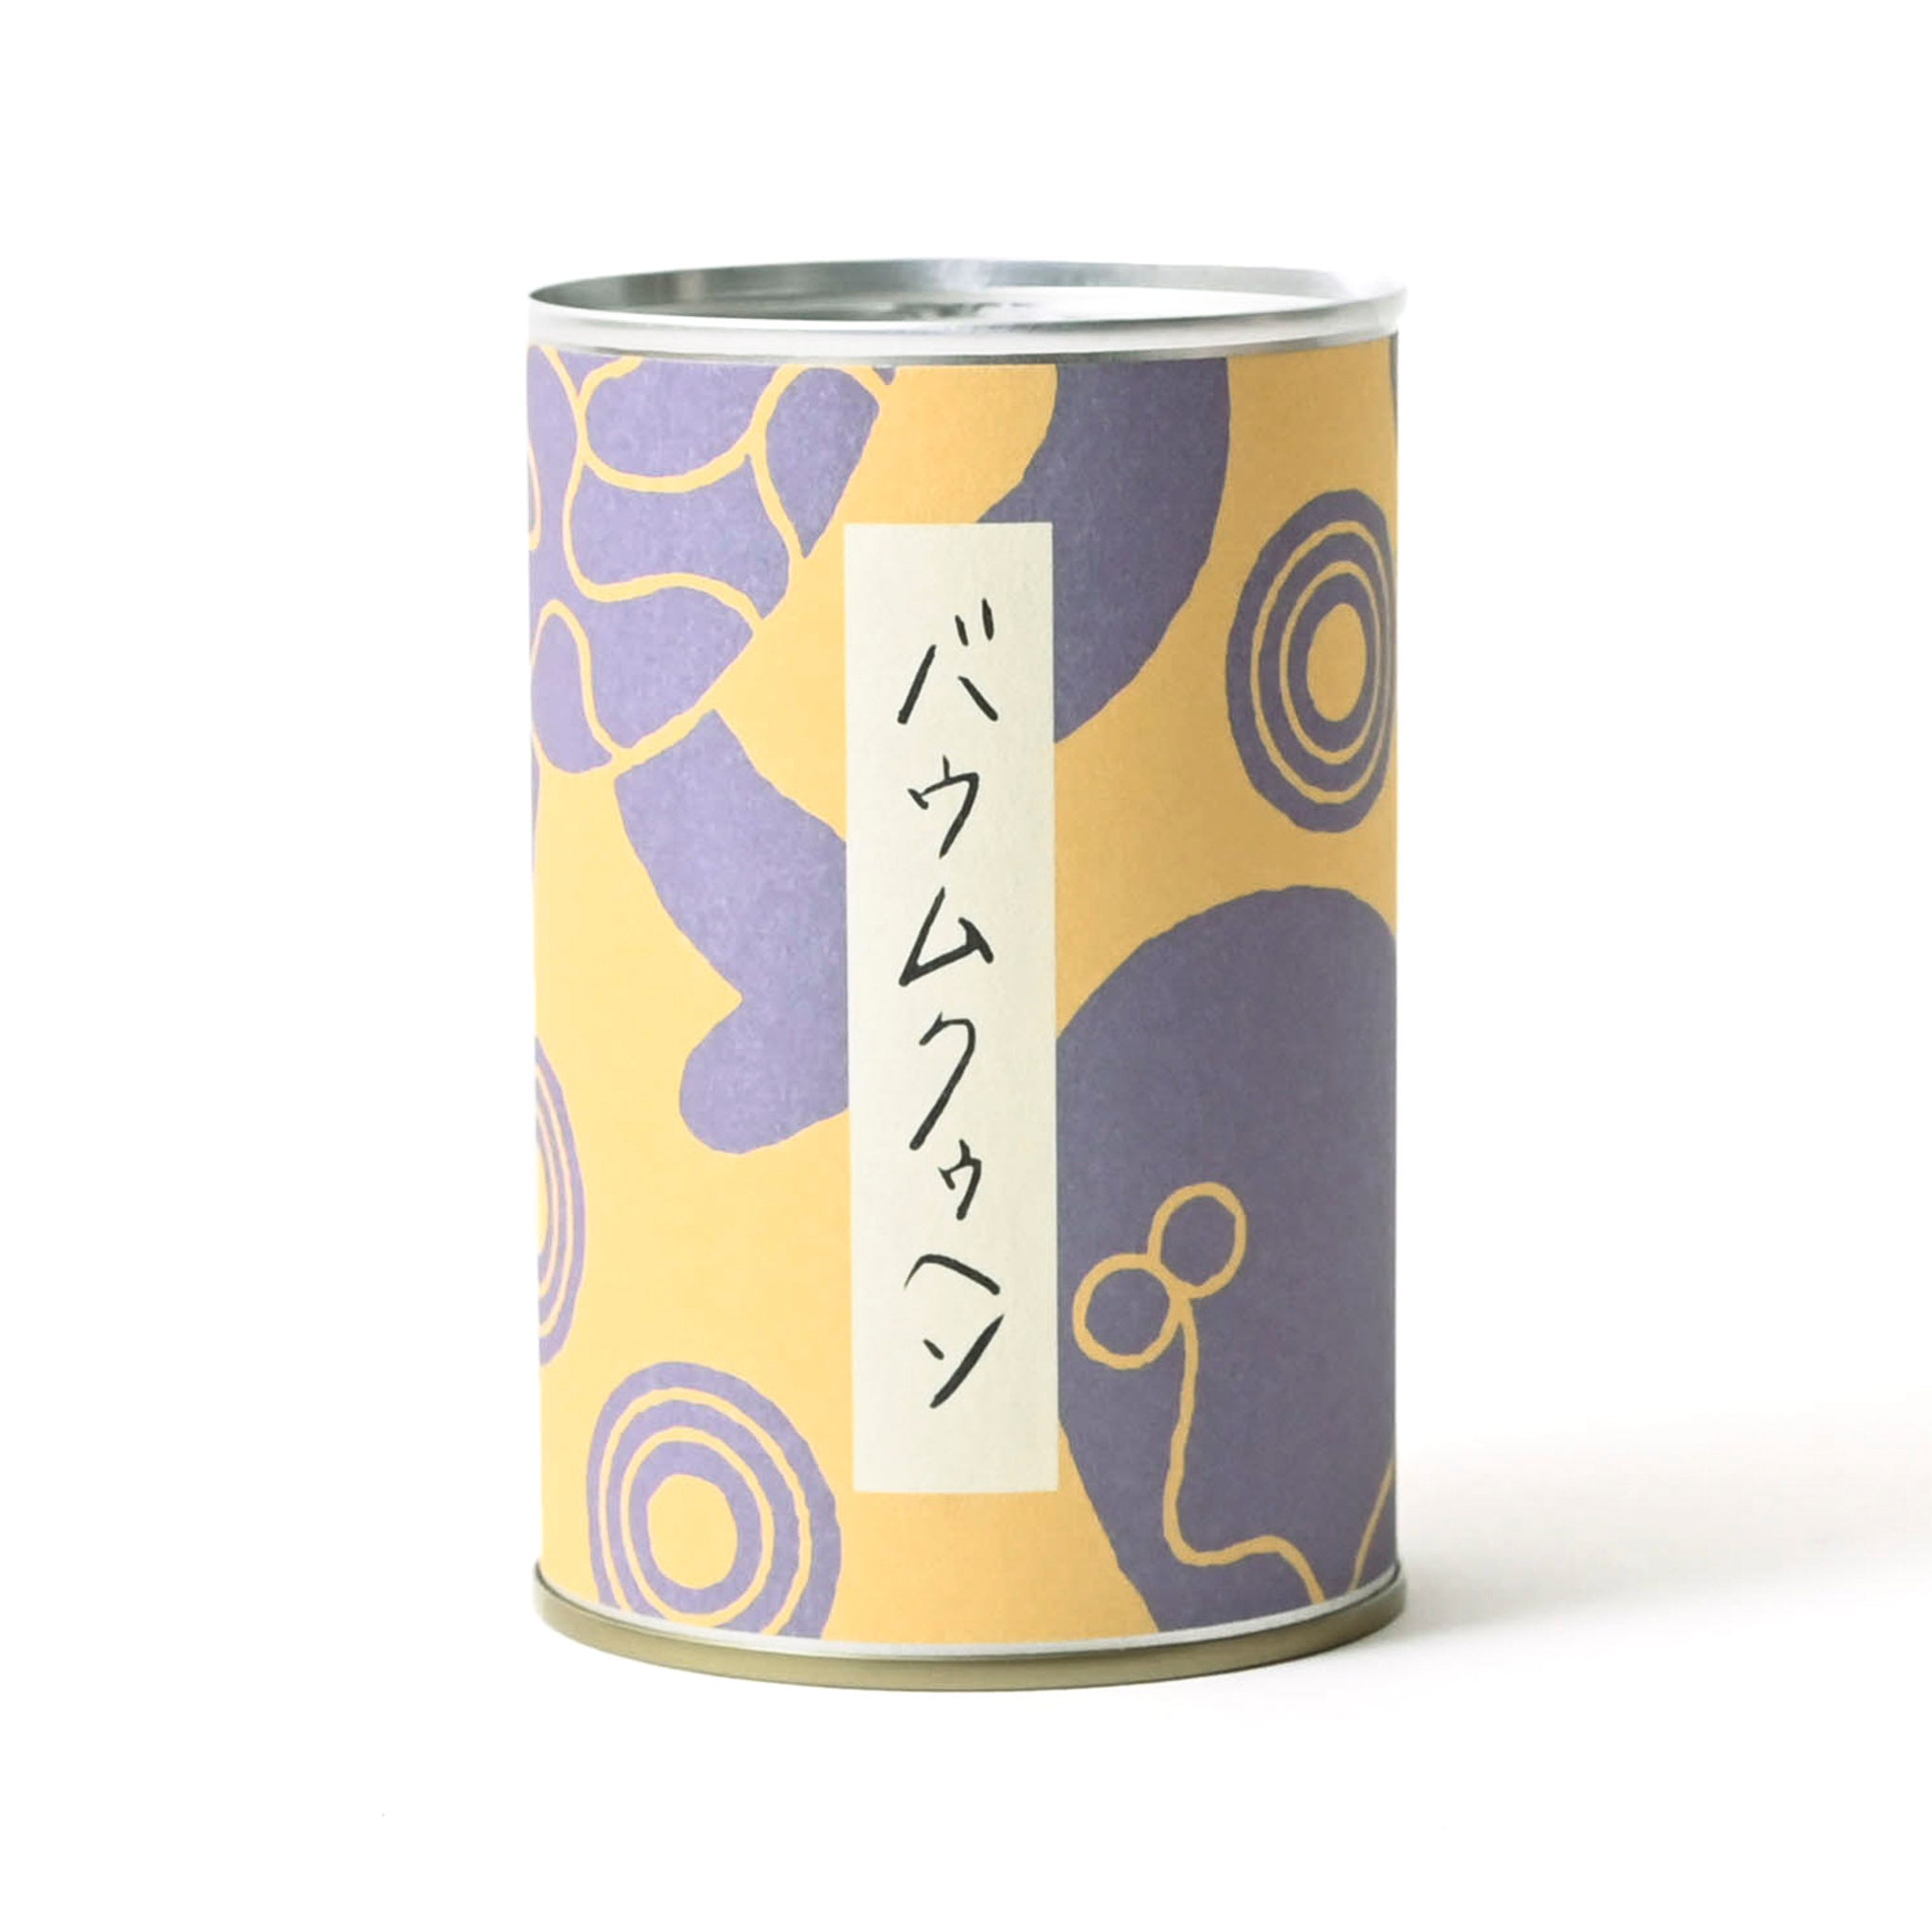 【GOOD CACAO/グッドカカオ 】日本茶に合うバウムクゥヘン